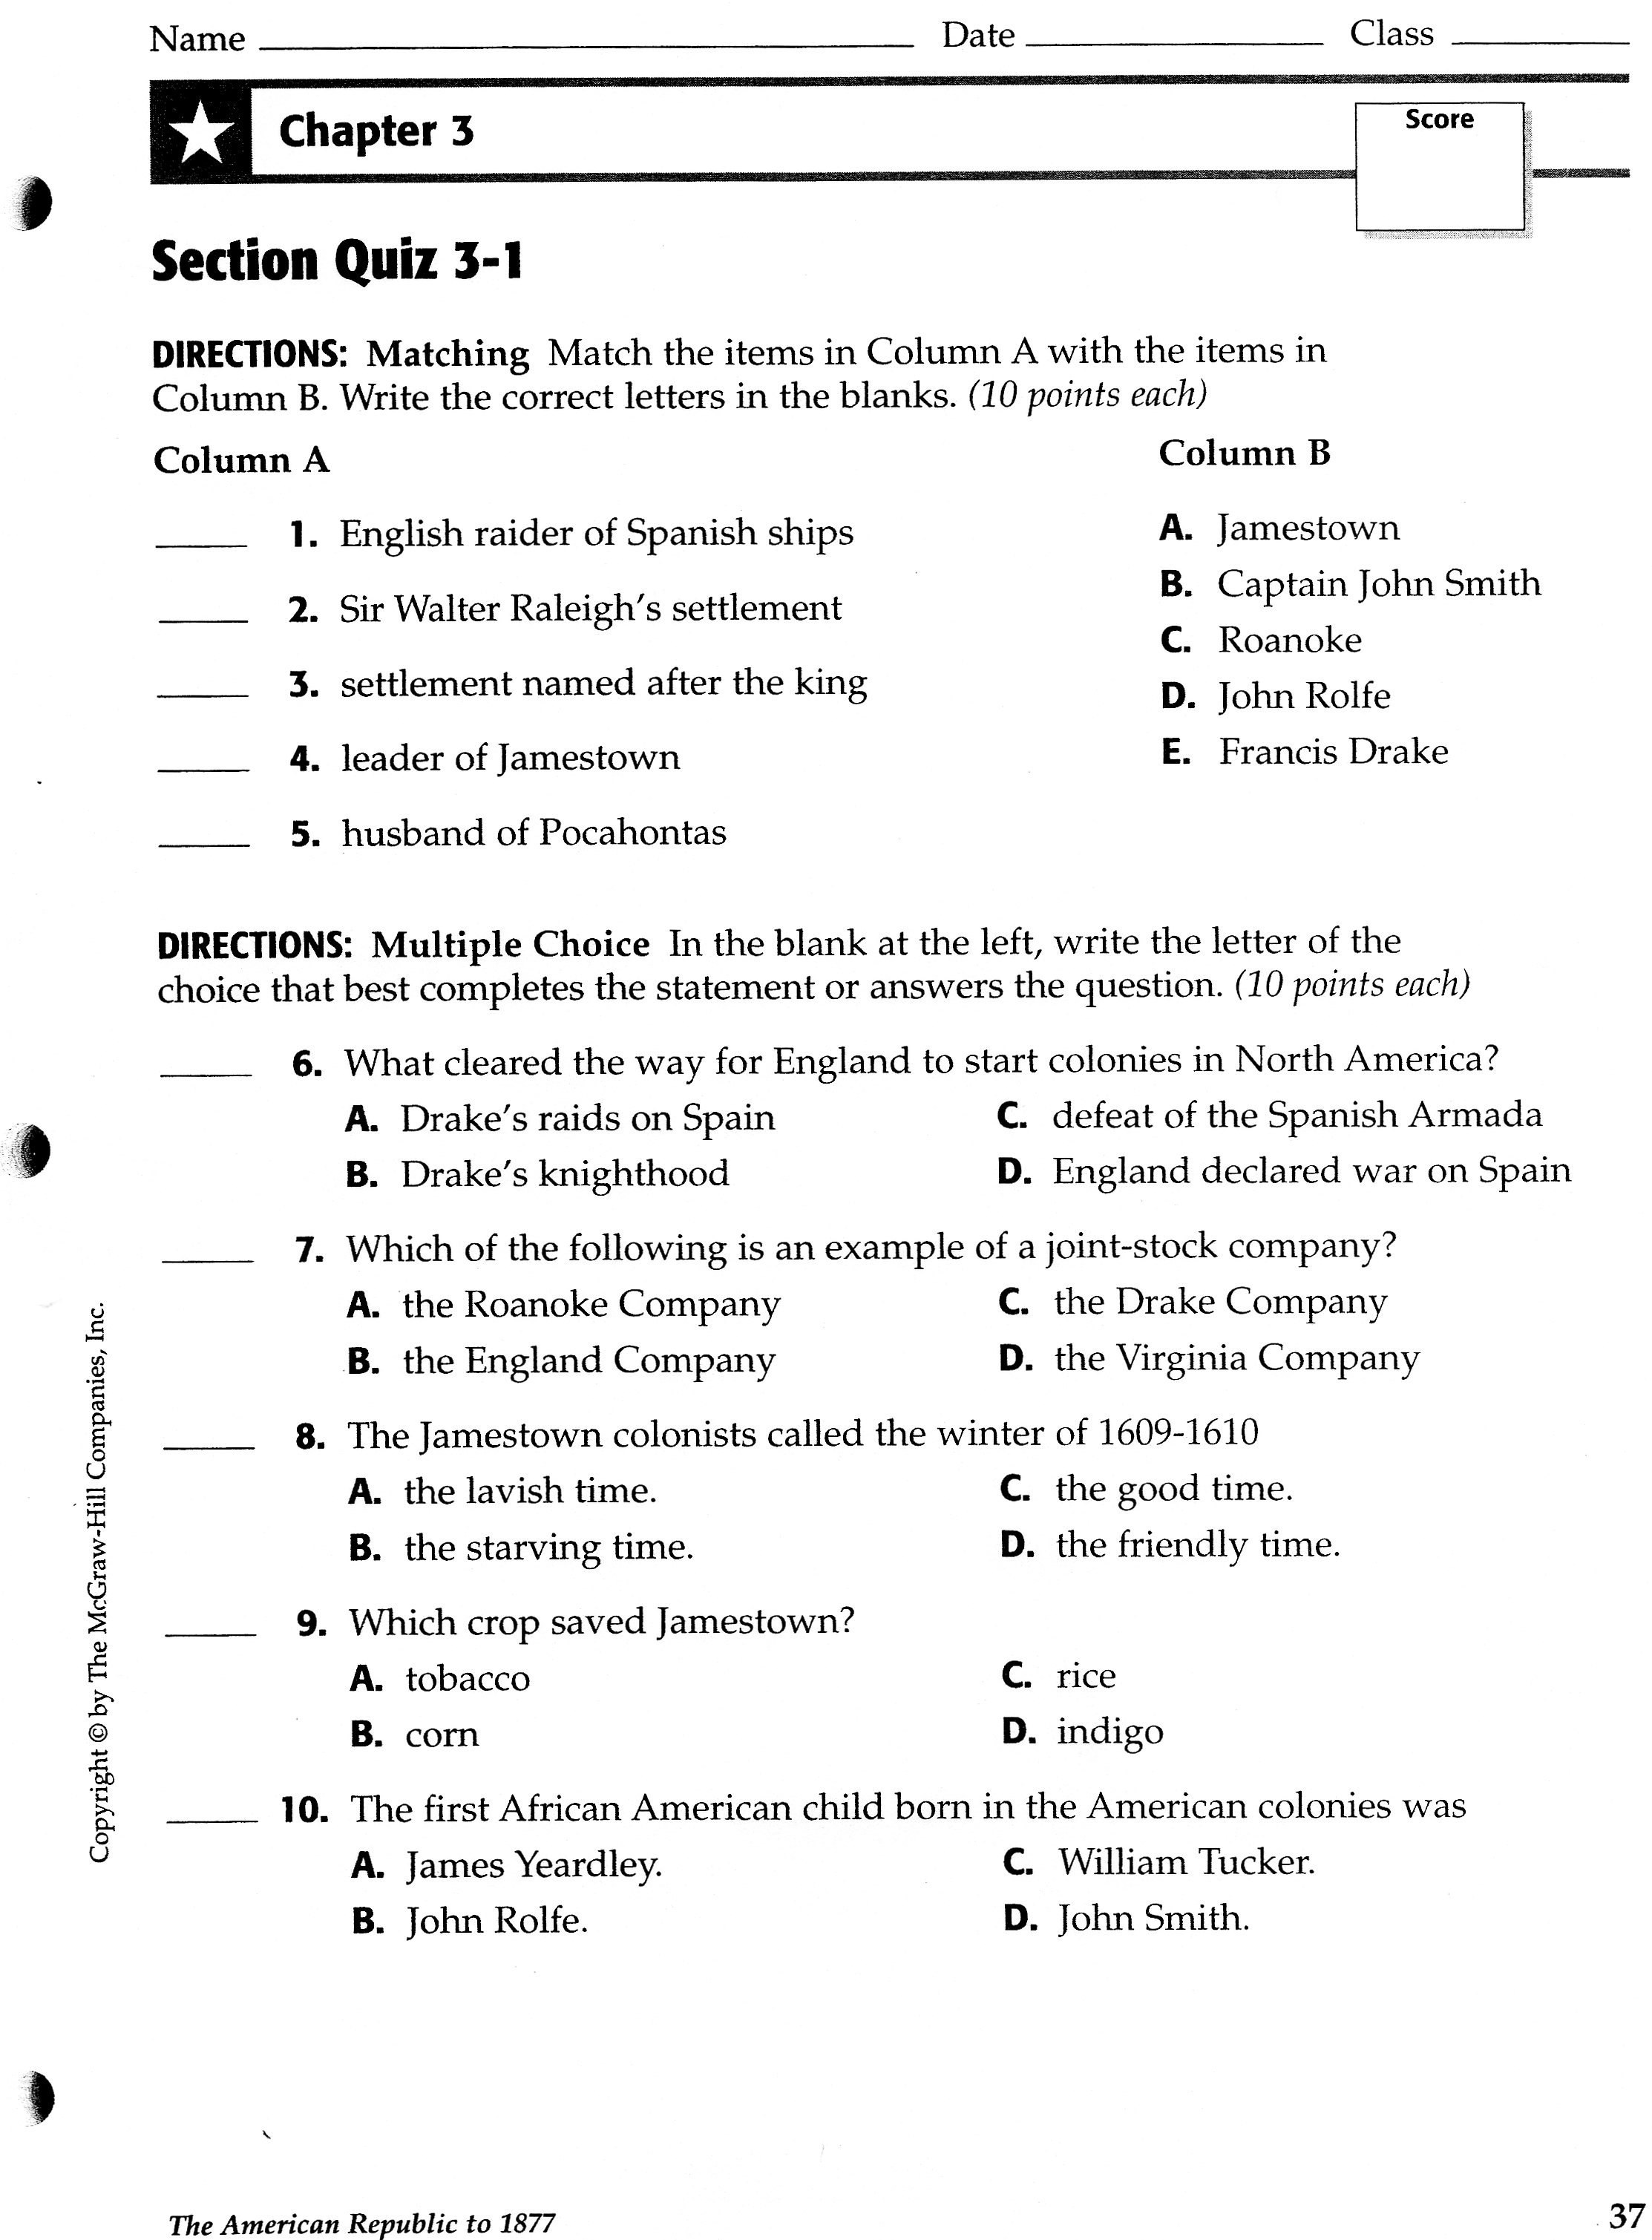 social-studies-worksheets-8th-grade